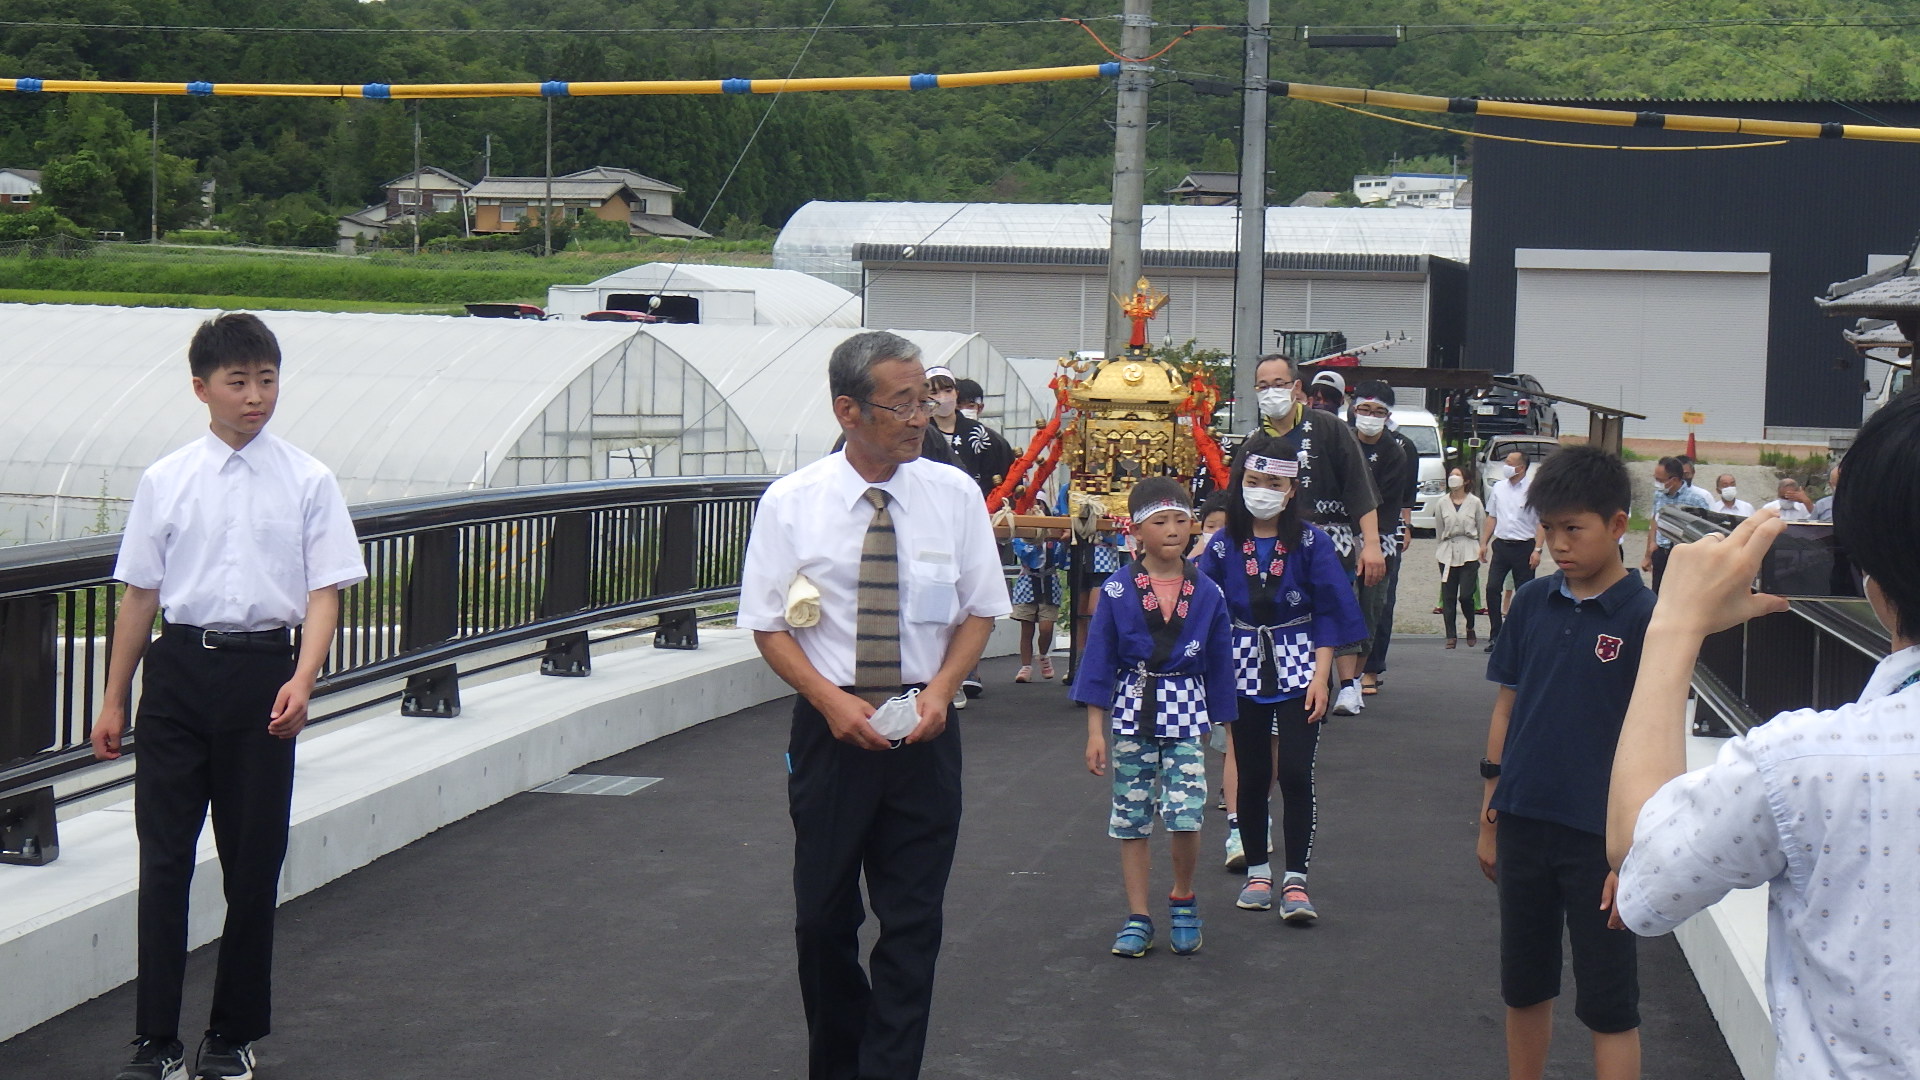 橋の渡り初めで、ハッピを着たこどもや大人が神輿の周りに集まっており、先頭に地元の役員や子どもたちがいる。